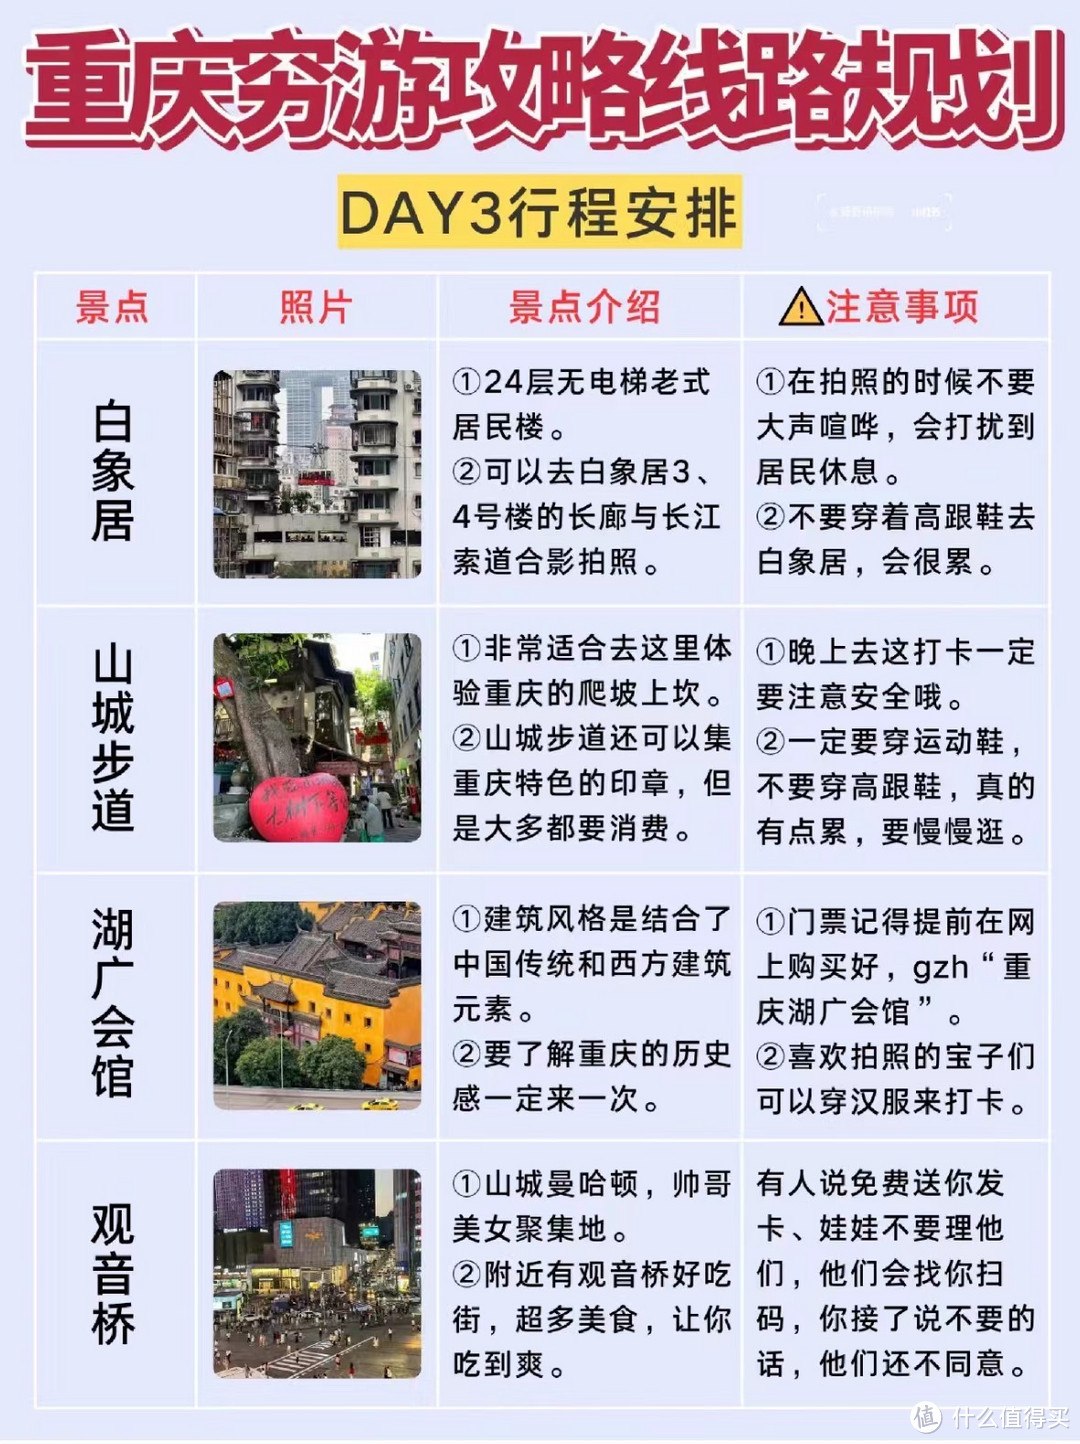 重庆保姆级穷游攻略线路规划😋三天两夜